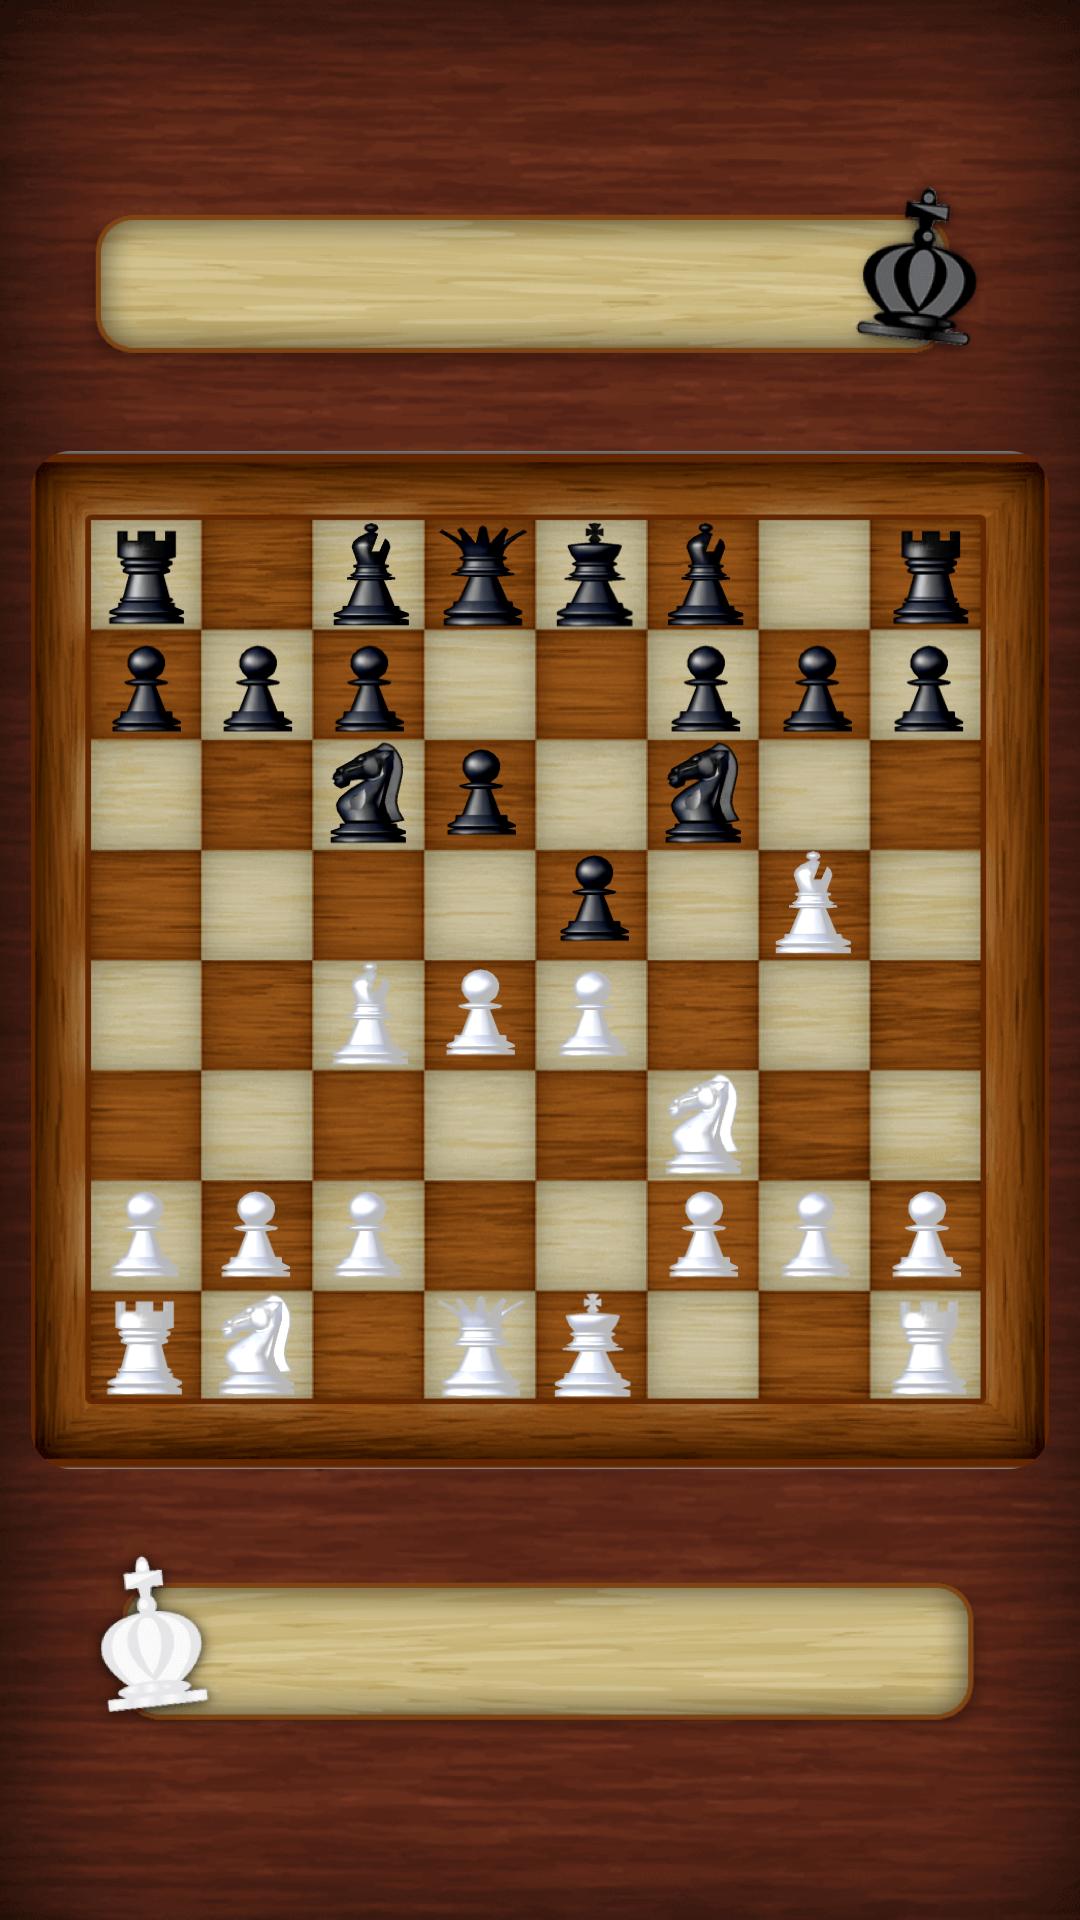 Chess Strategy board game 3.0.6 Screenshot 9